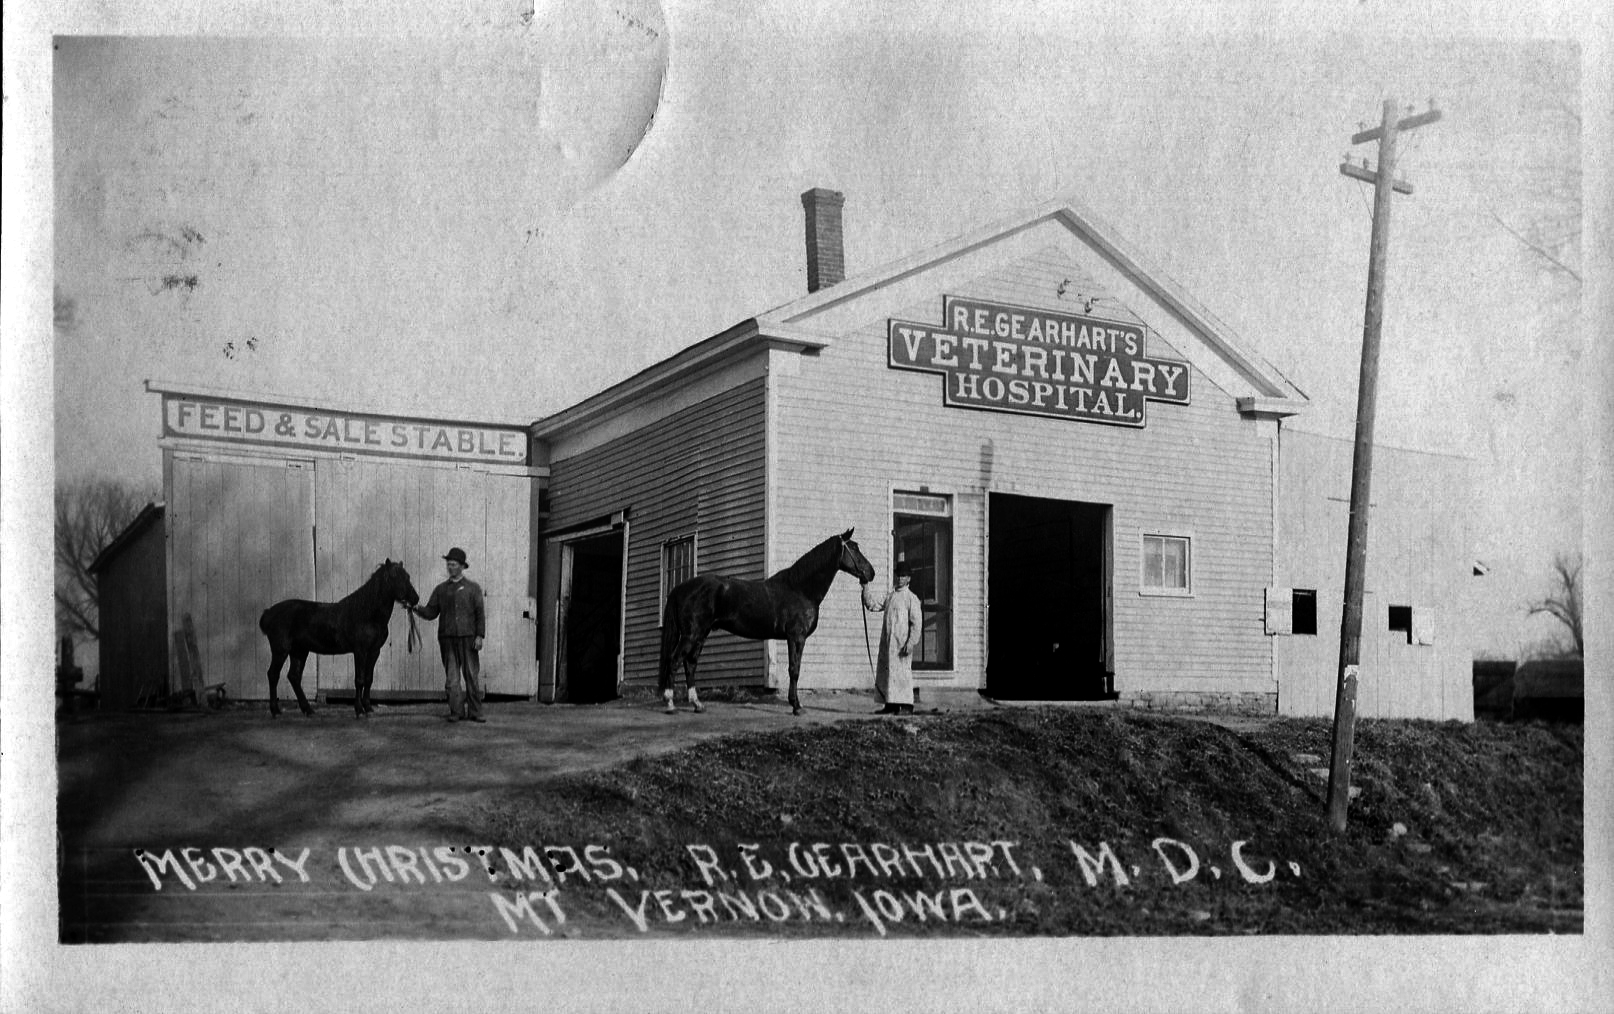 photo of R. E. Gearhart's Veterinary Hospital